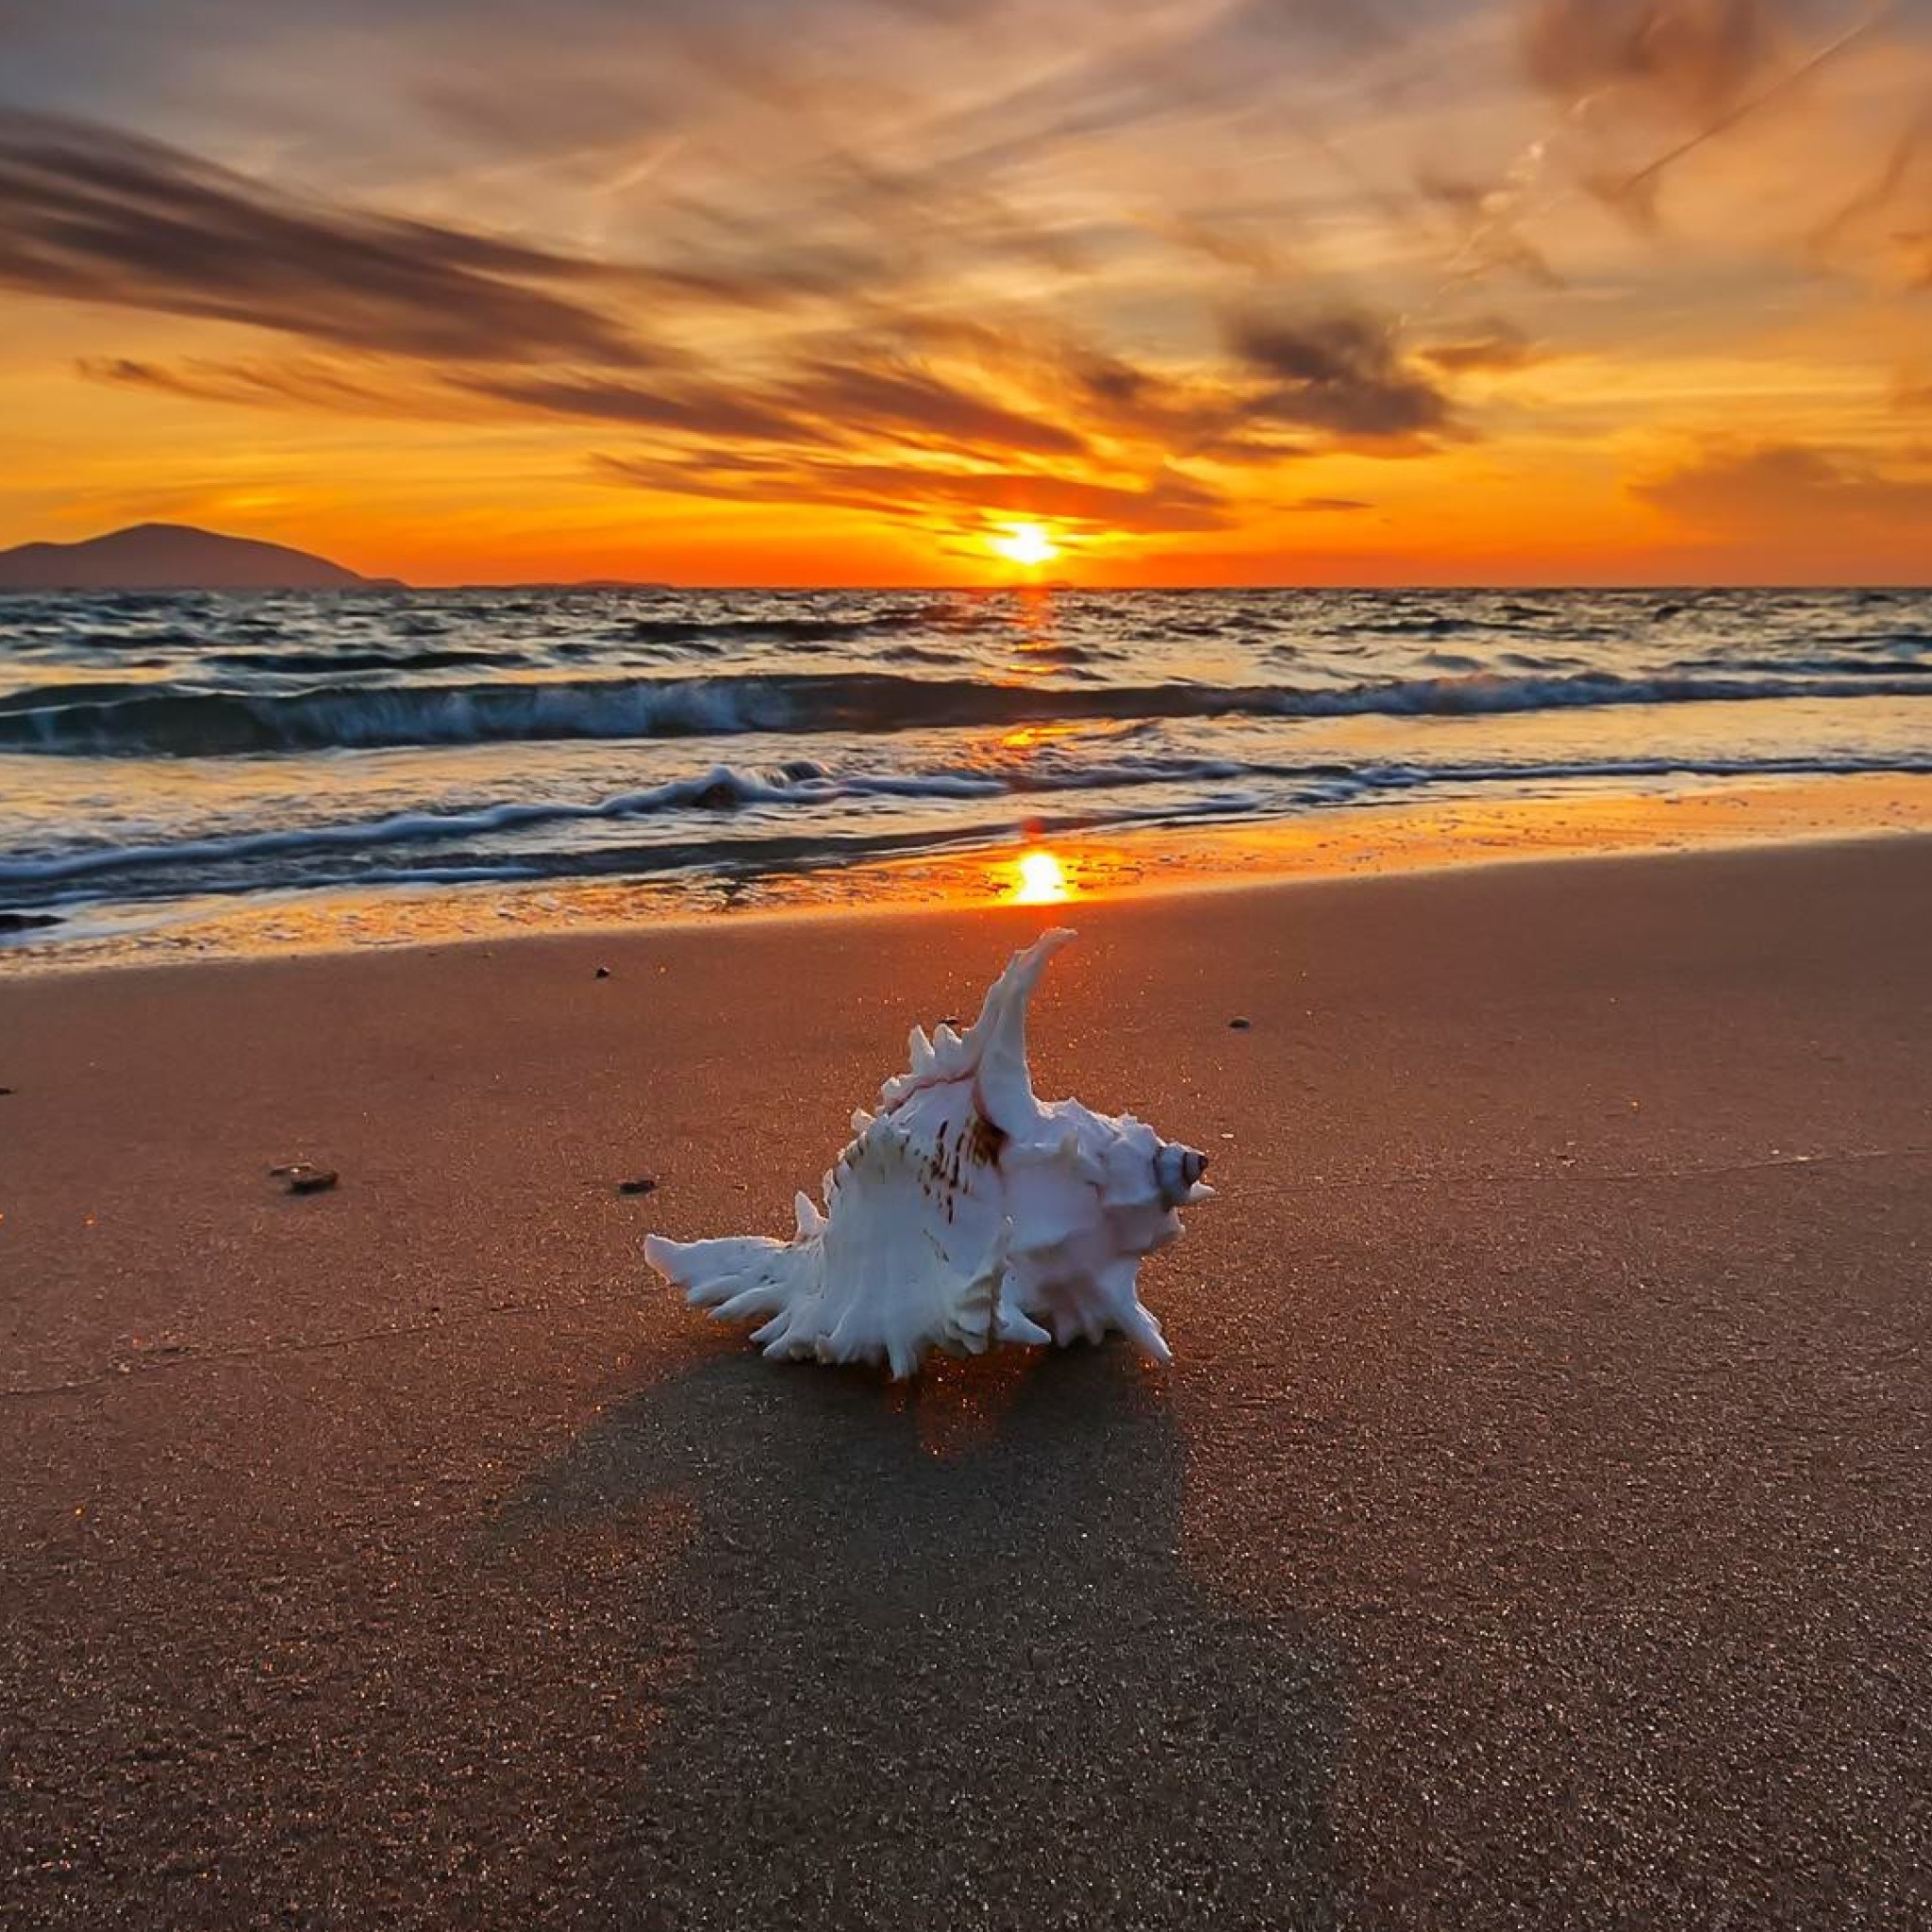 Обои Sunset on Beach with Shell 2048x2048